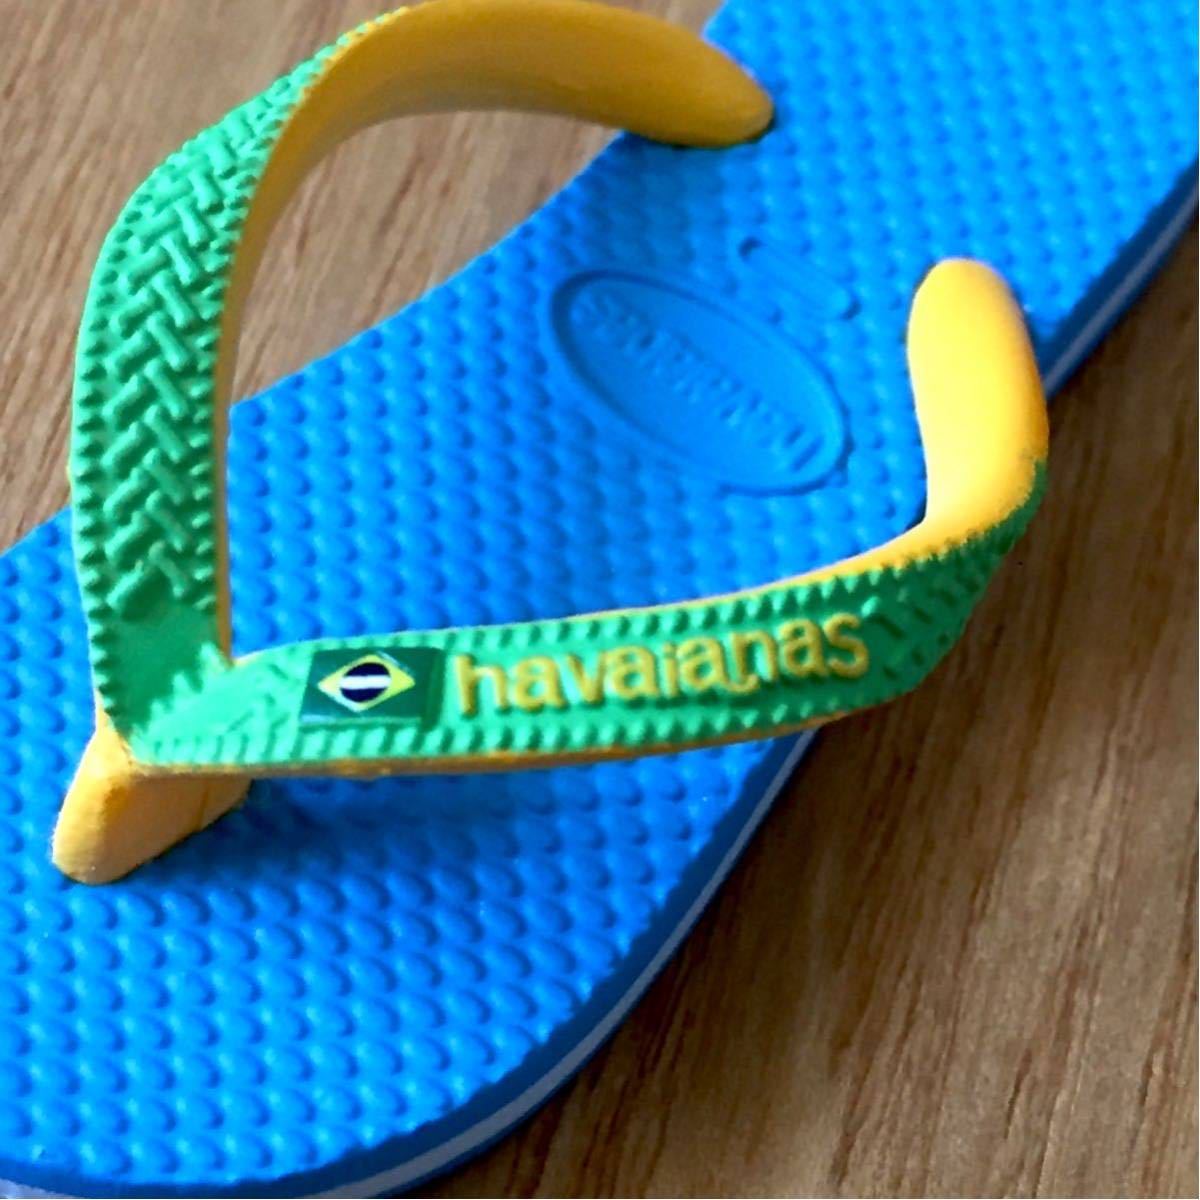 新品 Havaianas Beach sandals type Keyholder ハワイアナス ビーチサンダル型キーホルダー Havaianas Brazil ブラジル アルパルガタス社の画像5